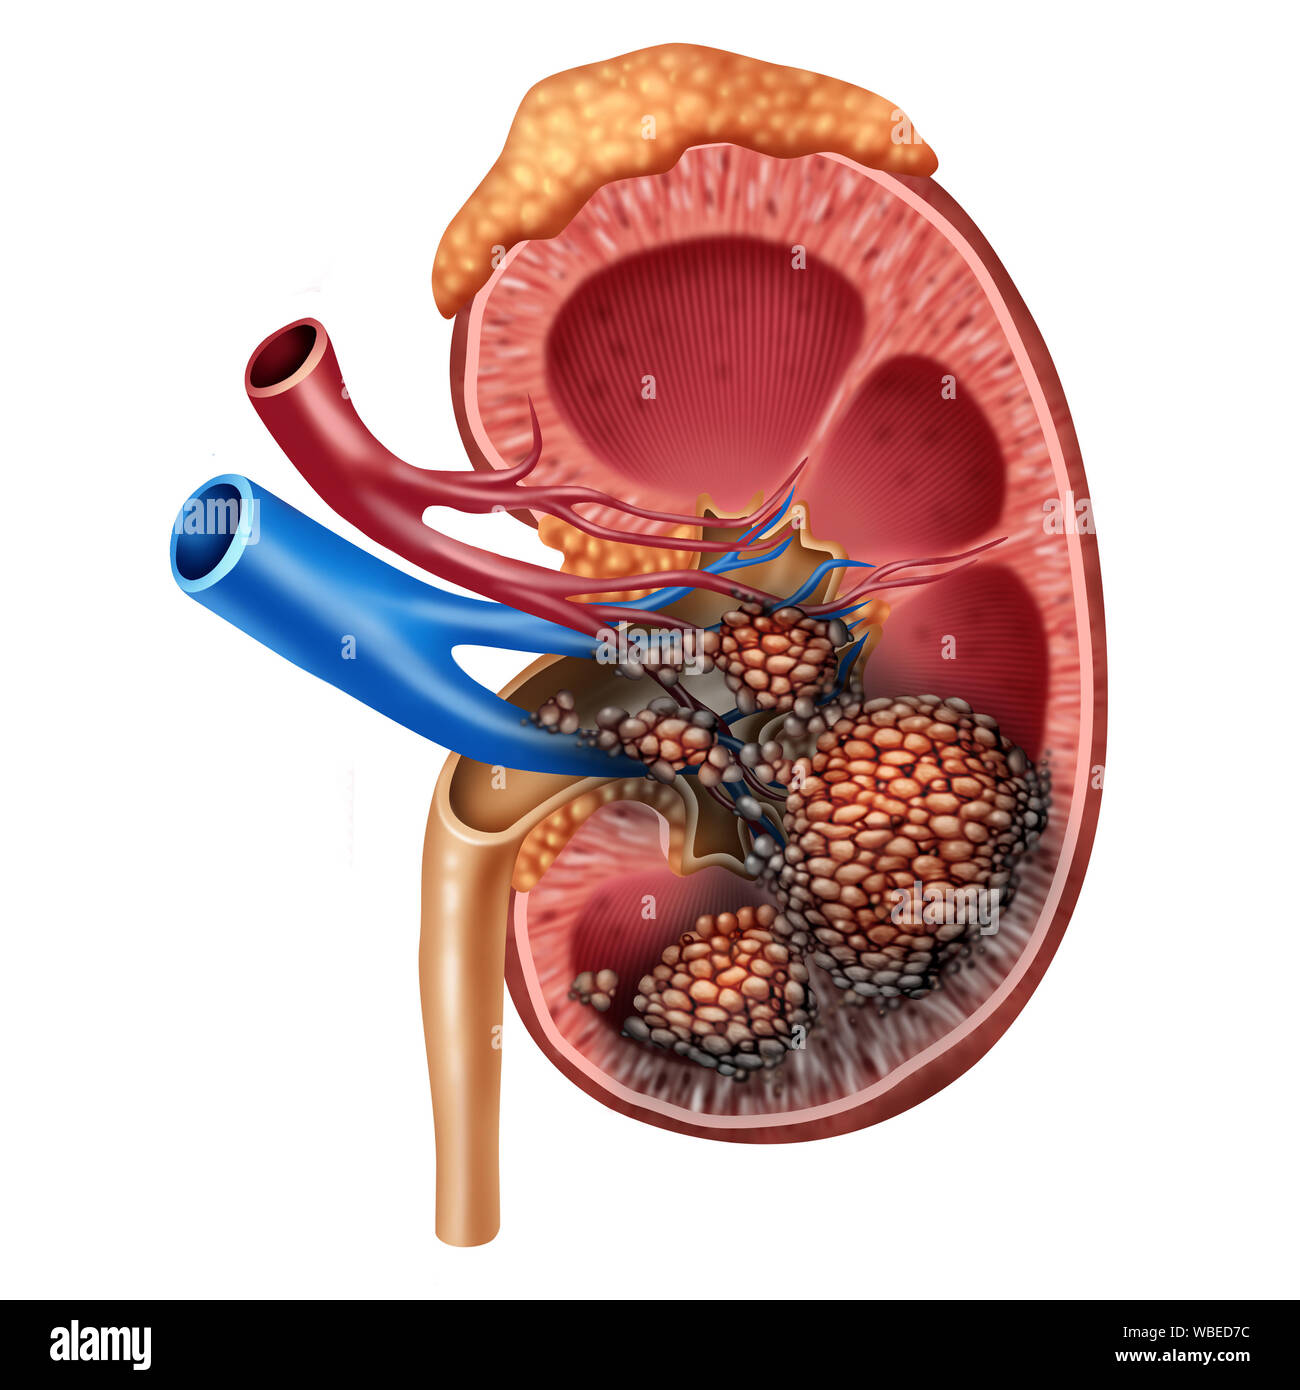 Rene umano anatomia del cancro concetto medico come cancerouse cellule in un corpo umano che attacca il sistema urinario e anatomia renale. Foto Stock